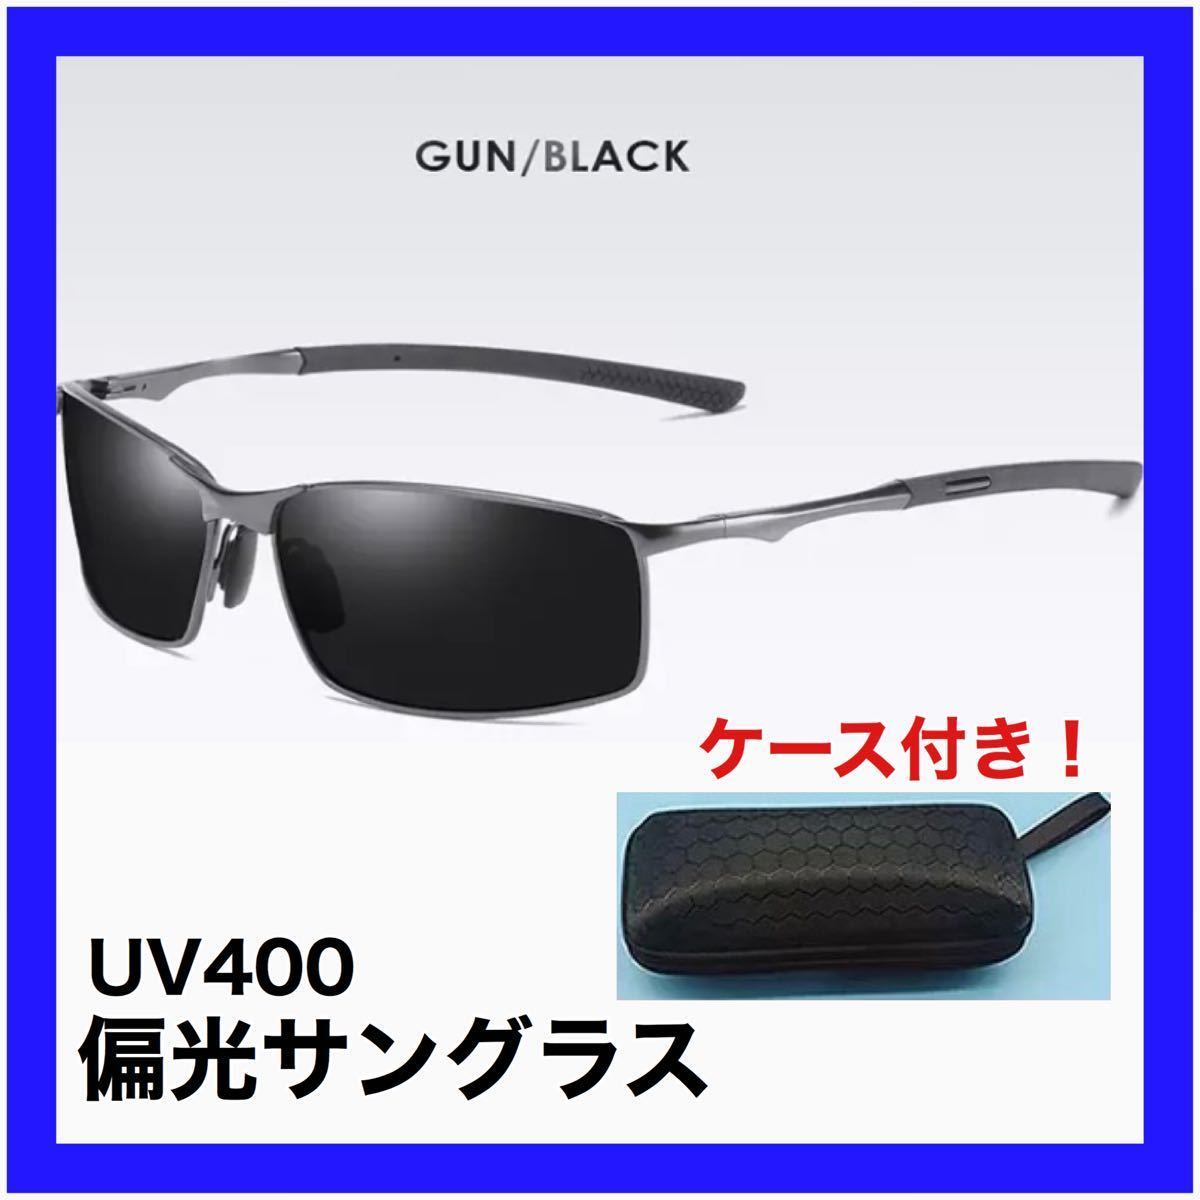 【新品】偏光サングラス 夏 海 ドライブ ファッション 日除け UV400 GUN BLACK 006_画像1